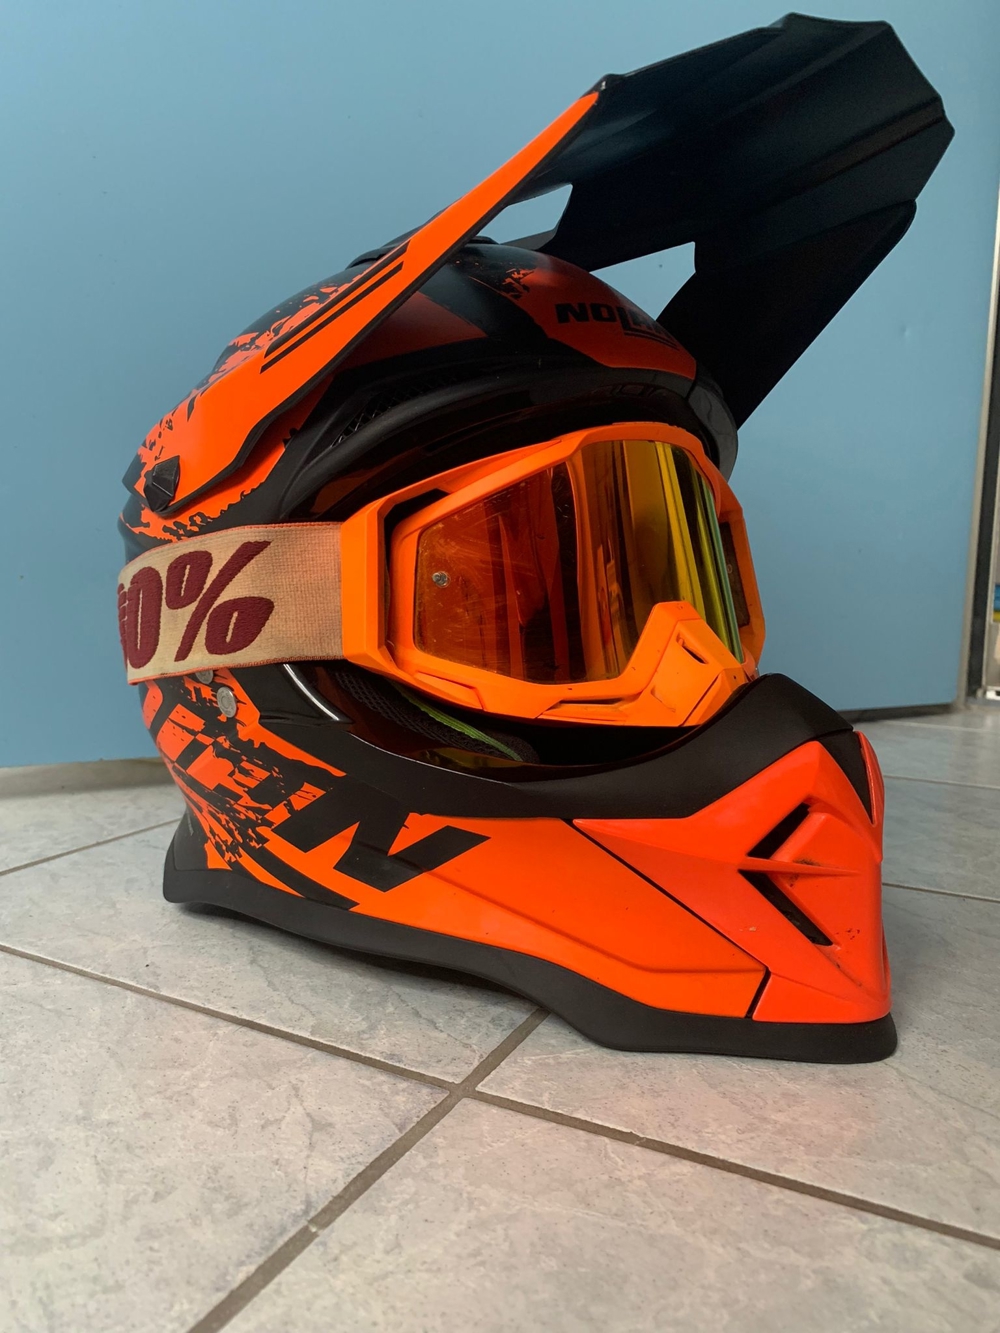 Motocross Helm